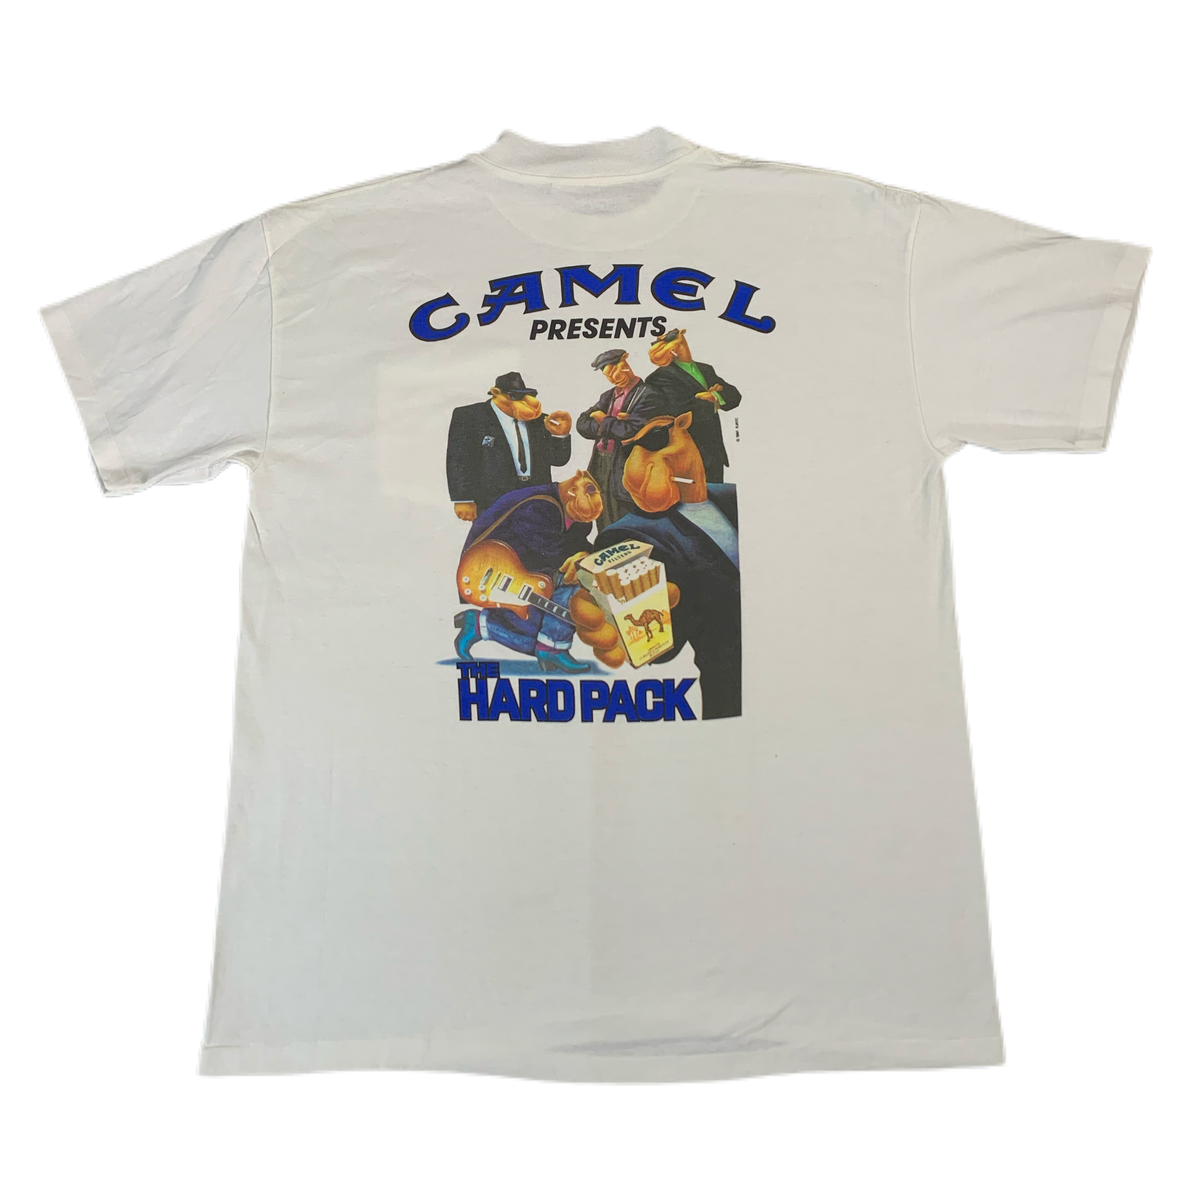 Vintage Camel “Hard Pack” T-Shirt - jointcustodydc